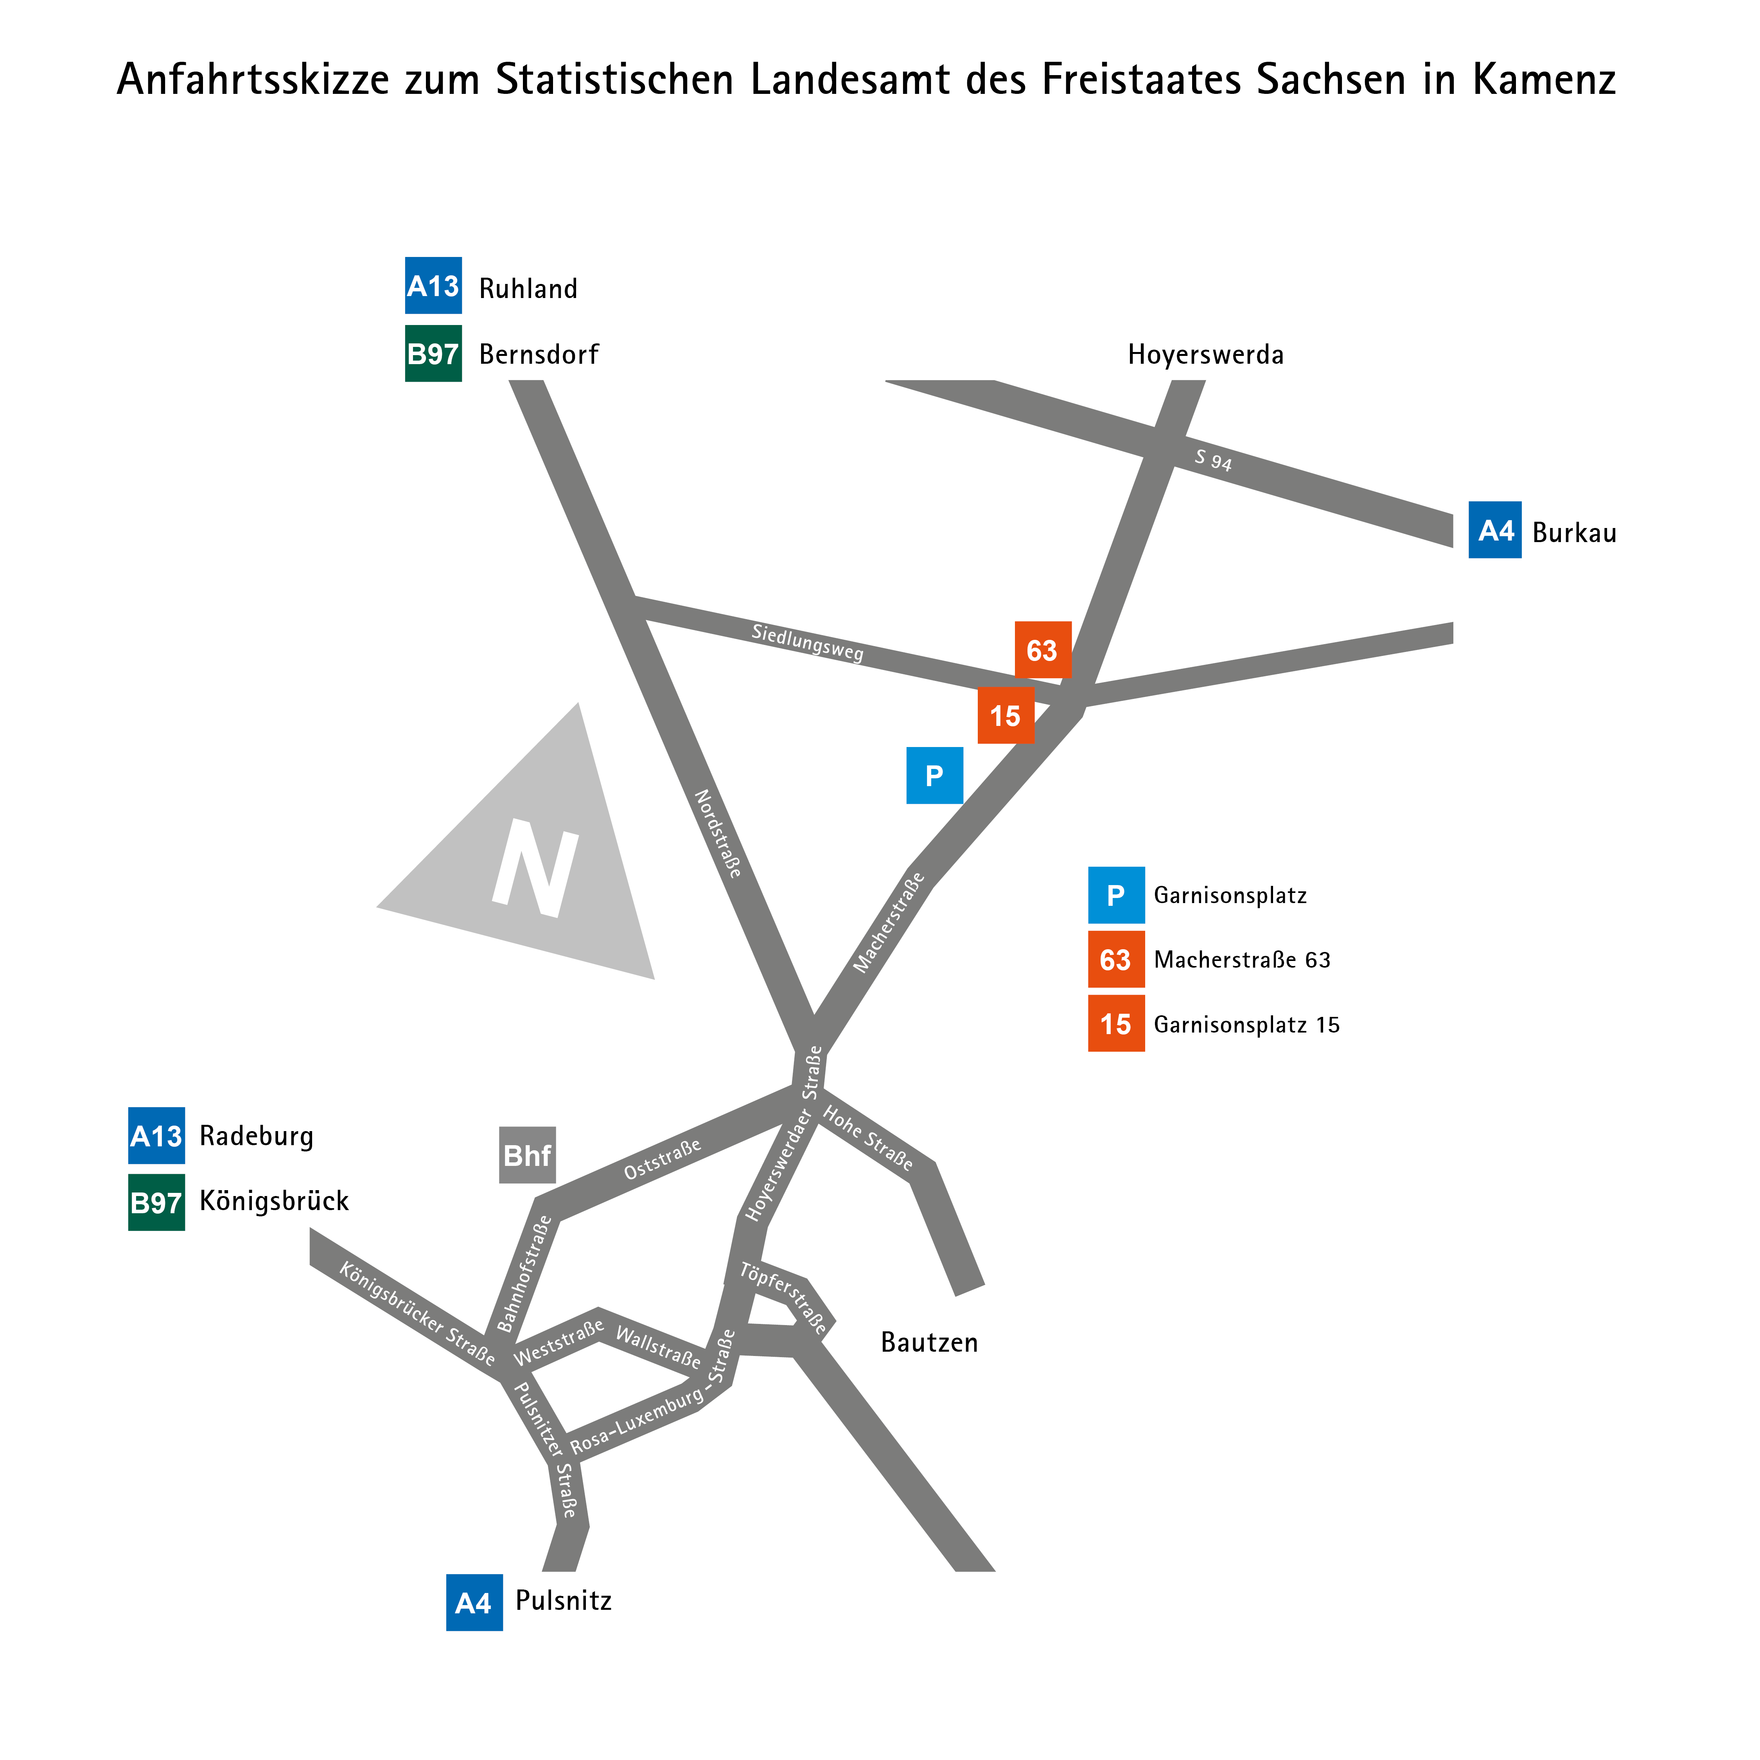 Das Bild zeigt eine Anfahrtskizze zum Statistischen Landesamt des Freistaates Sachsen.